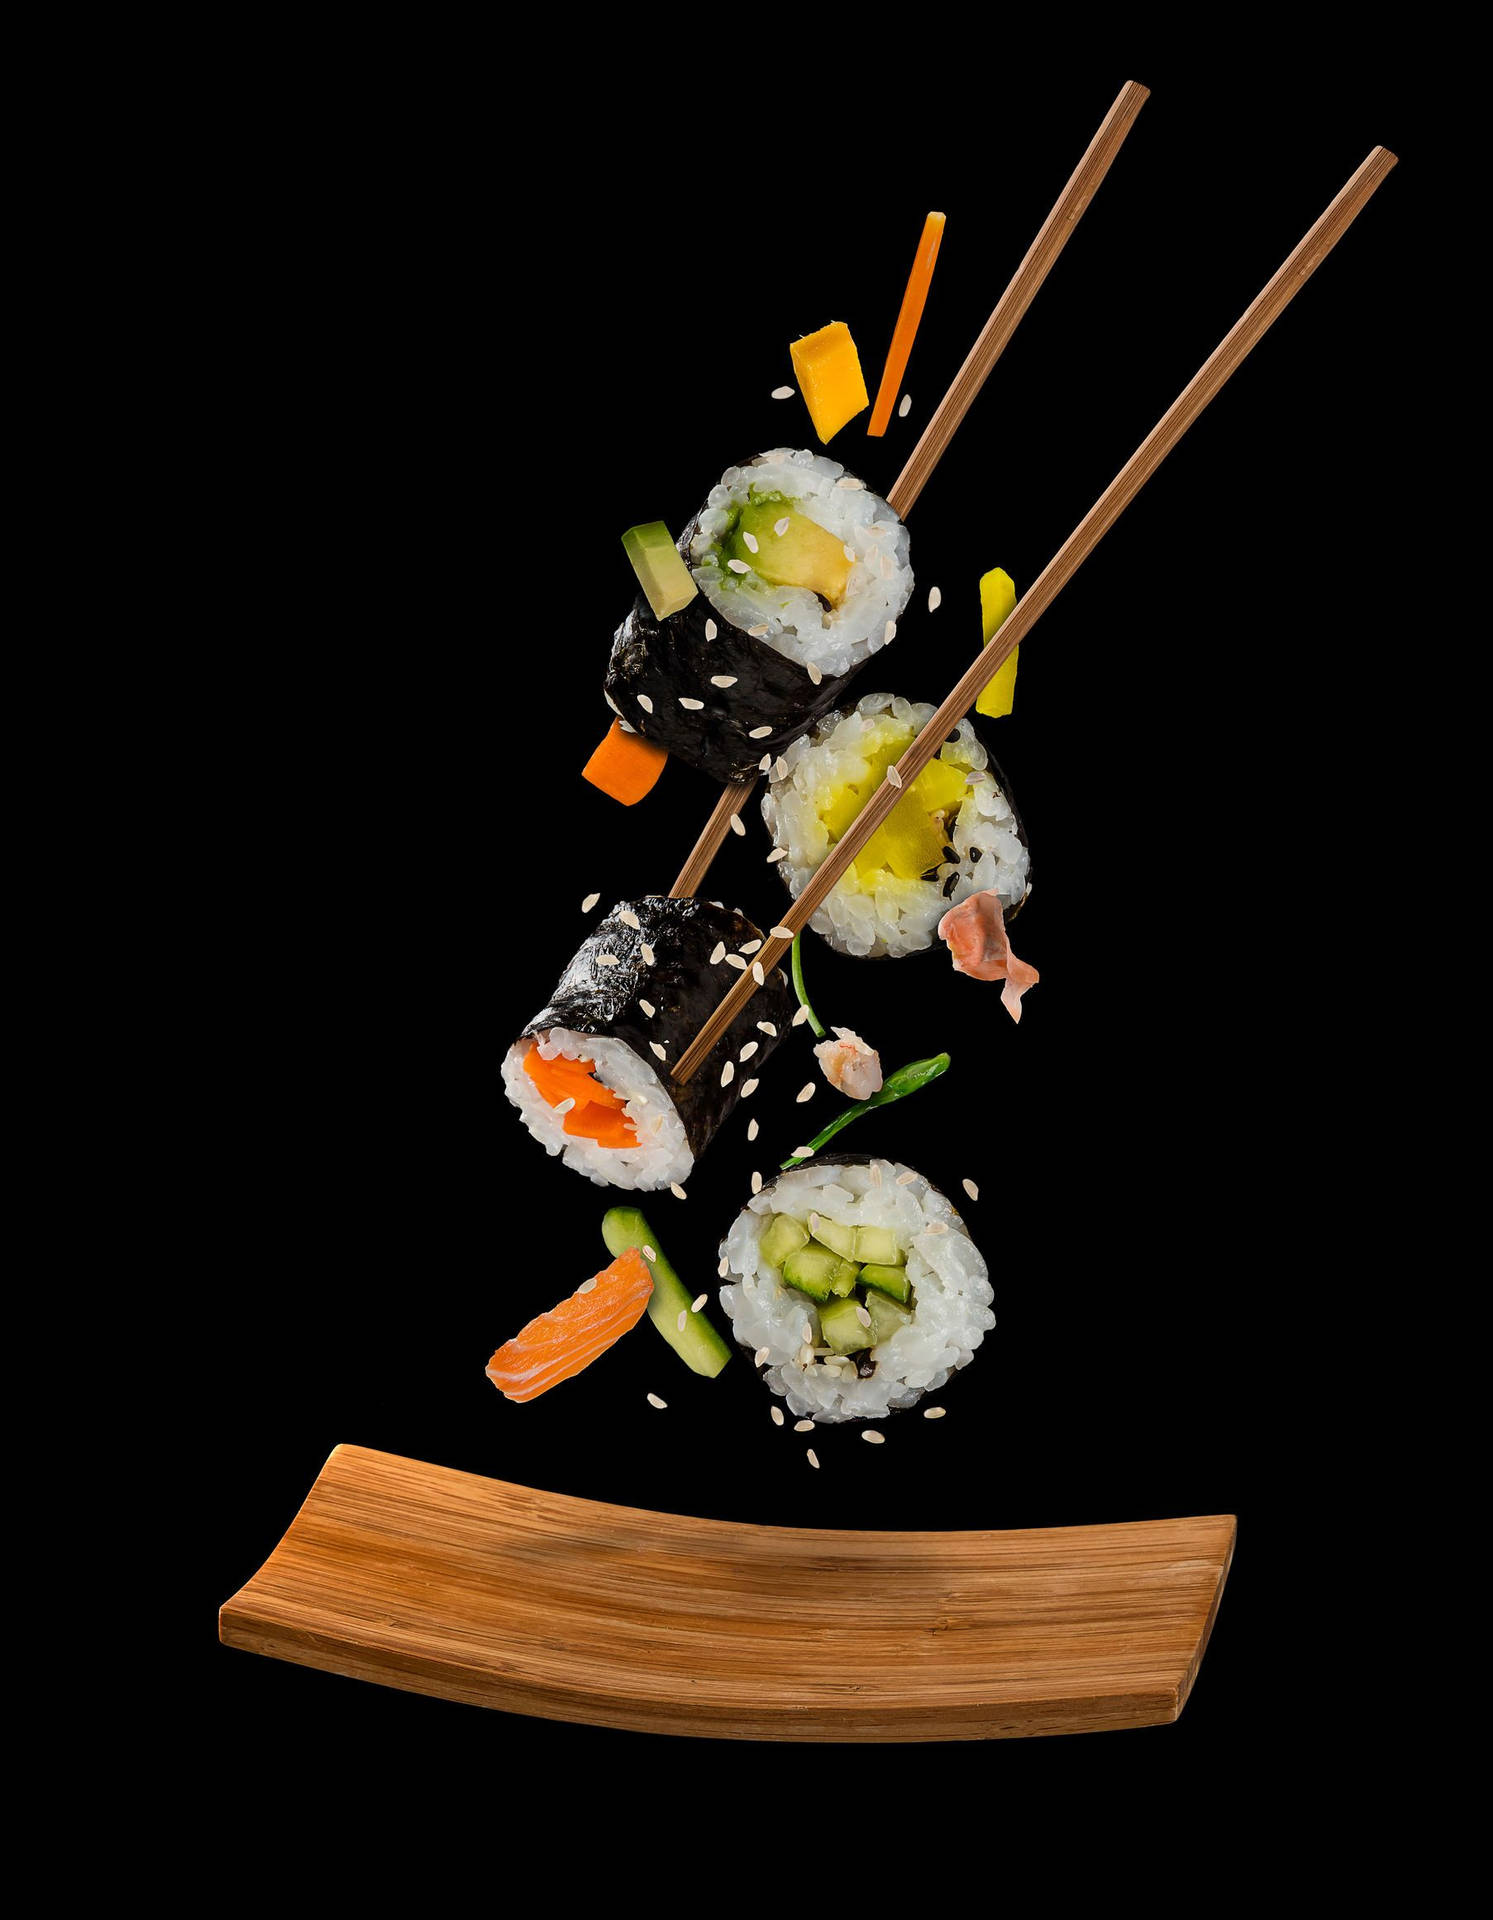 Maki Sushi Food Photography Background